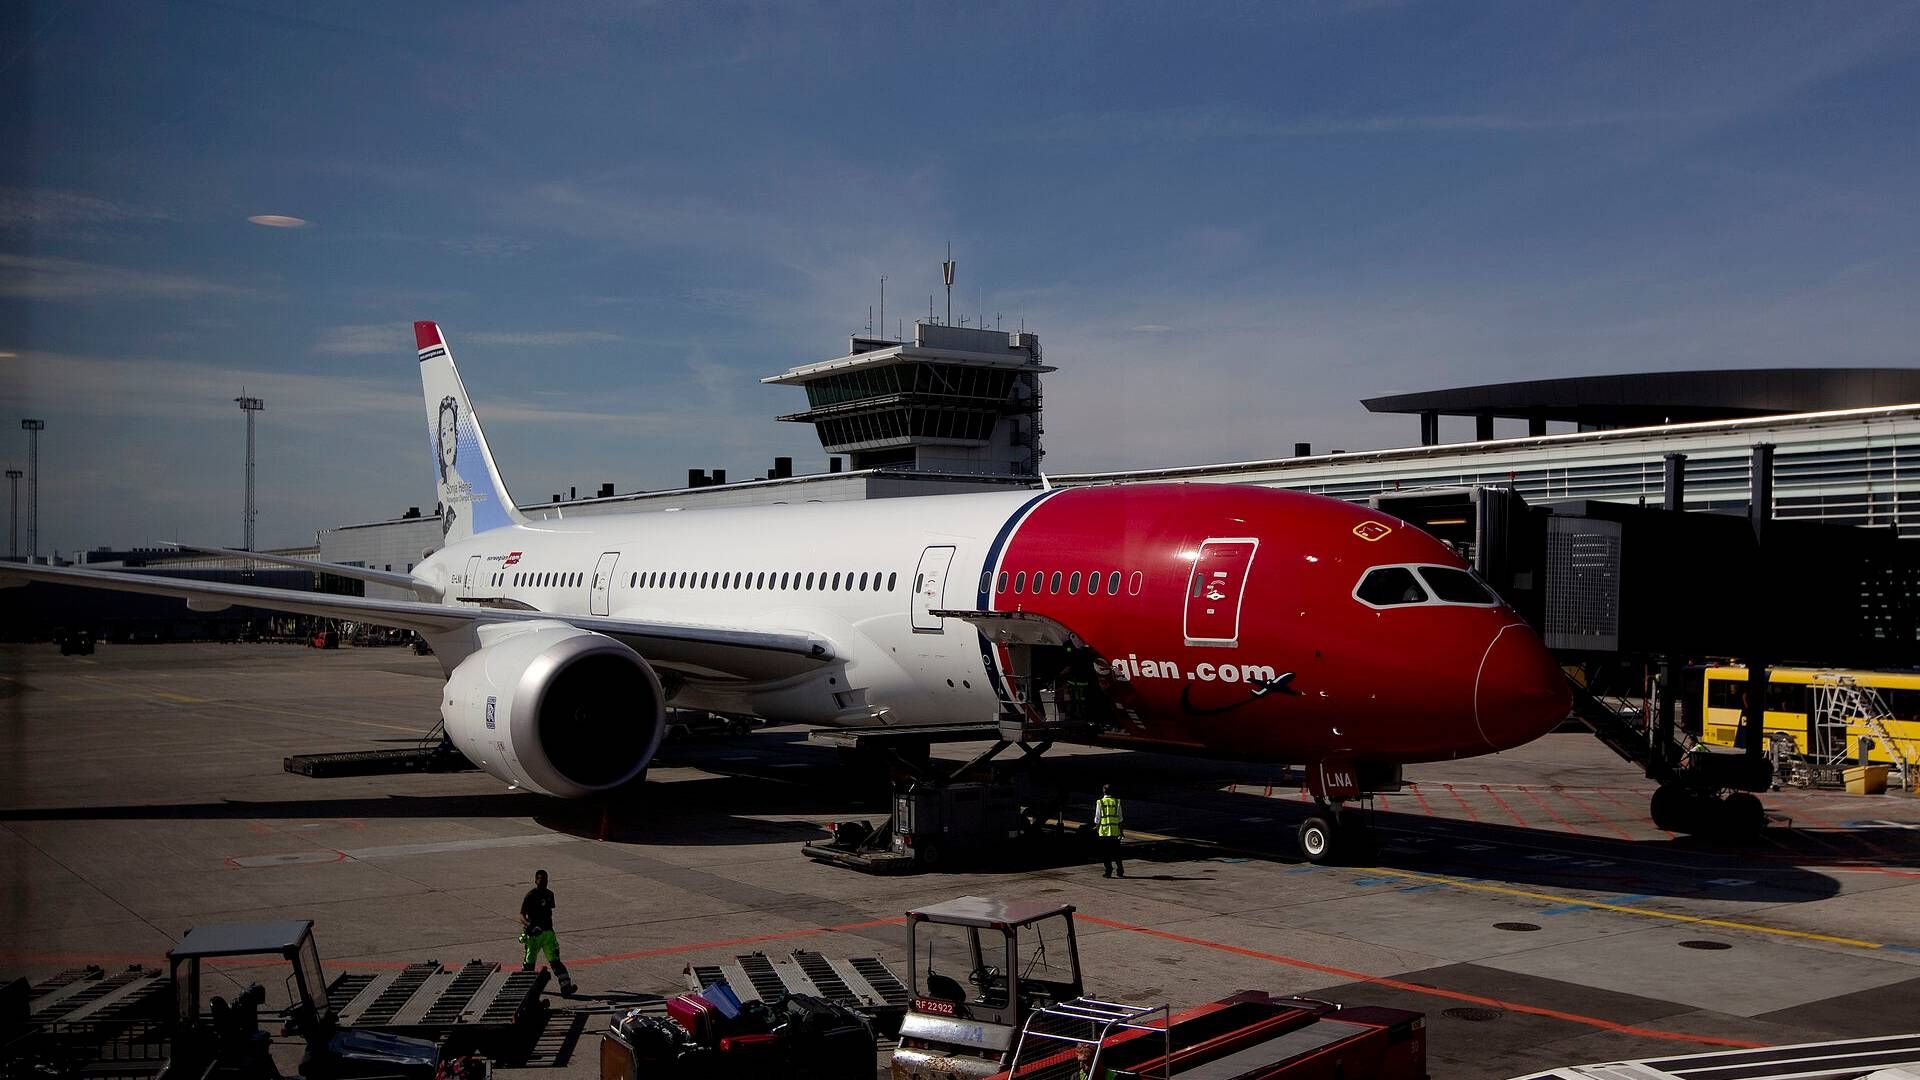 "Det er det samlede afgiftsniveau, der vil være afgørende for luftfartsbranchen,” skriver minister. | Foto: Finn Frandsen/Politiken/Ritzau Scanpix